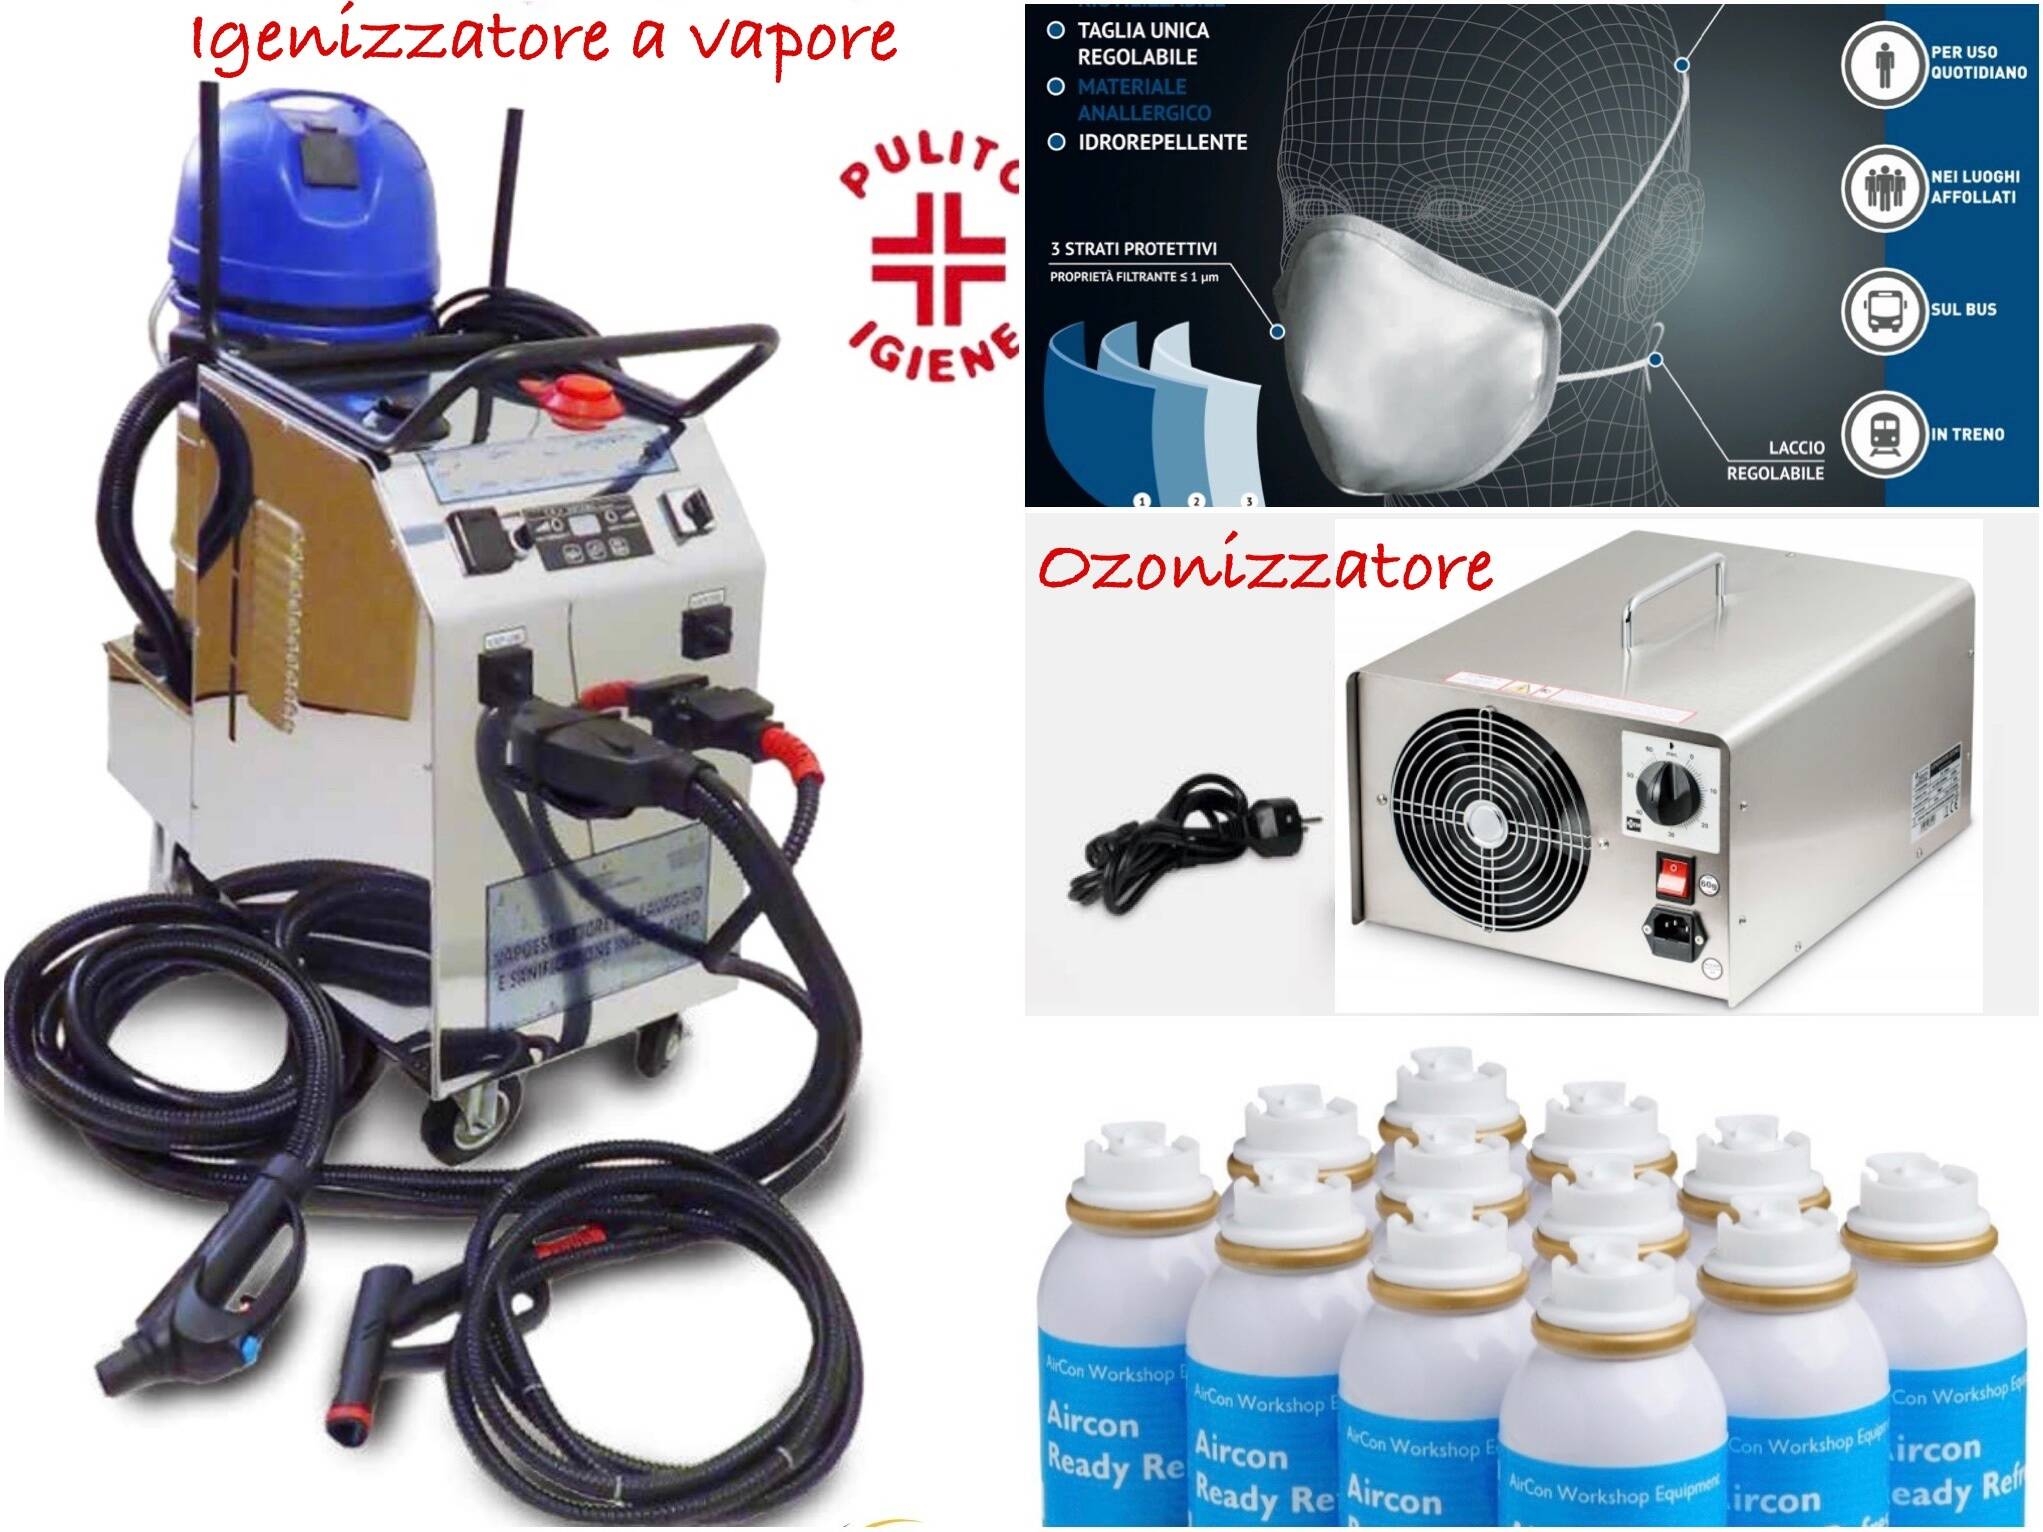 Programa homologado de lavado y desinfección de interiores, generadores de ozono y máscaras homologadas